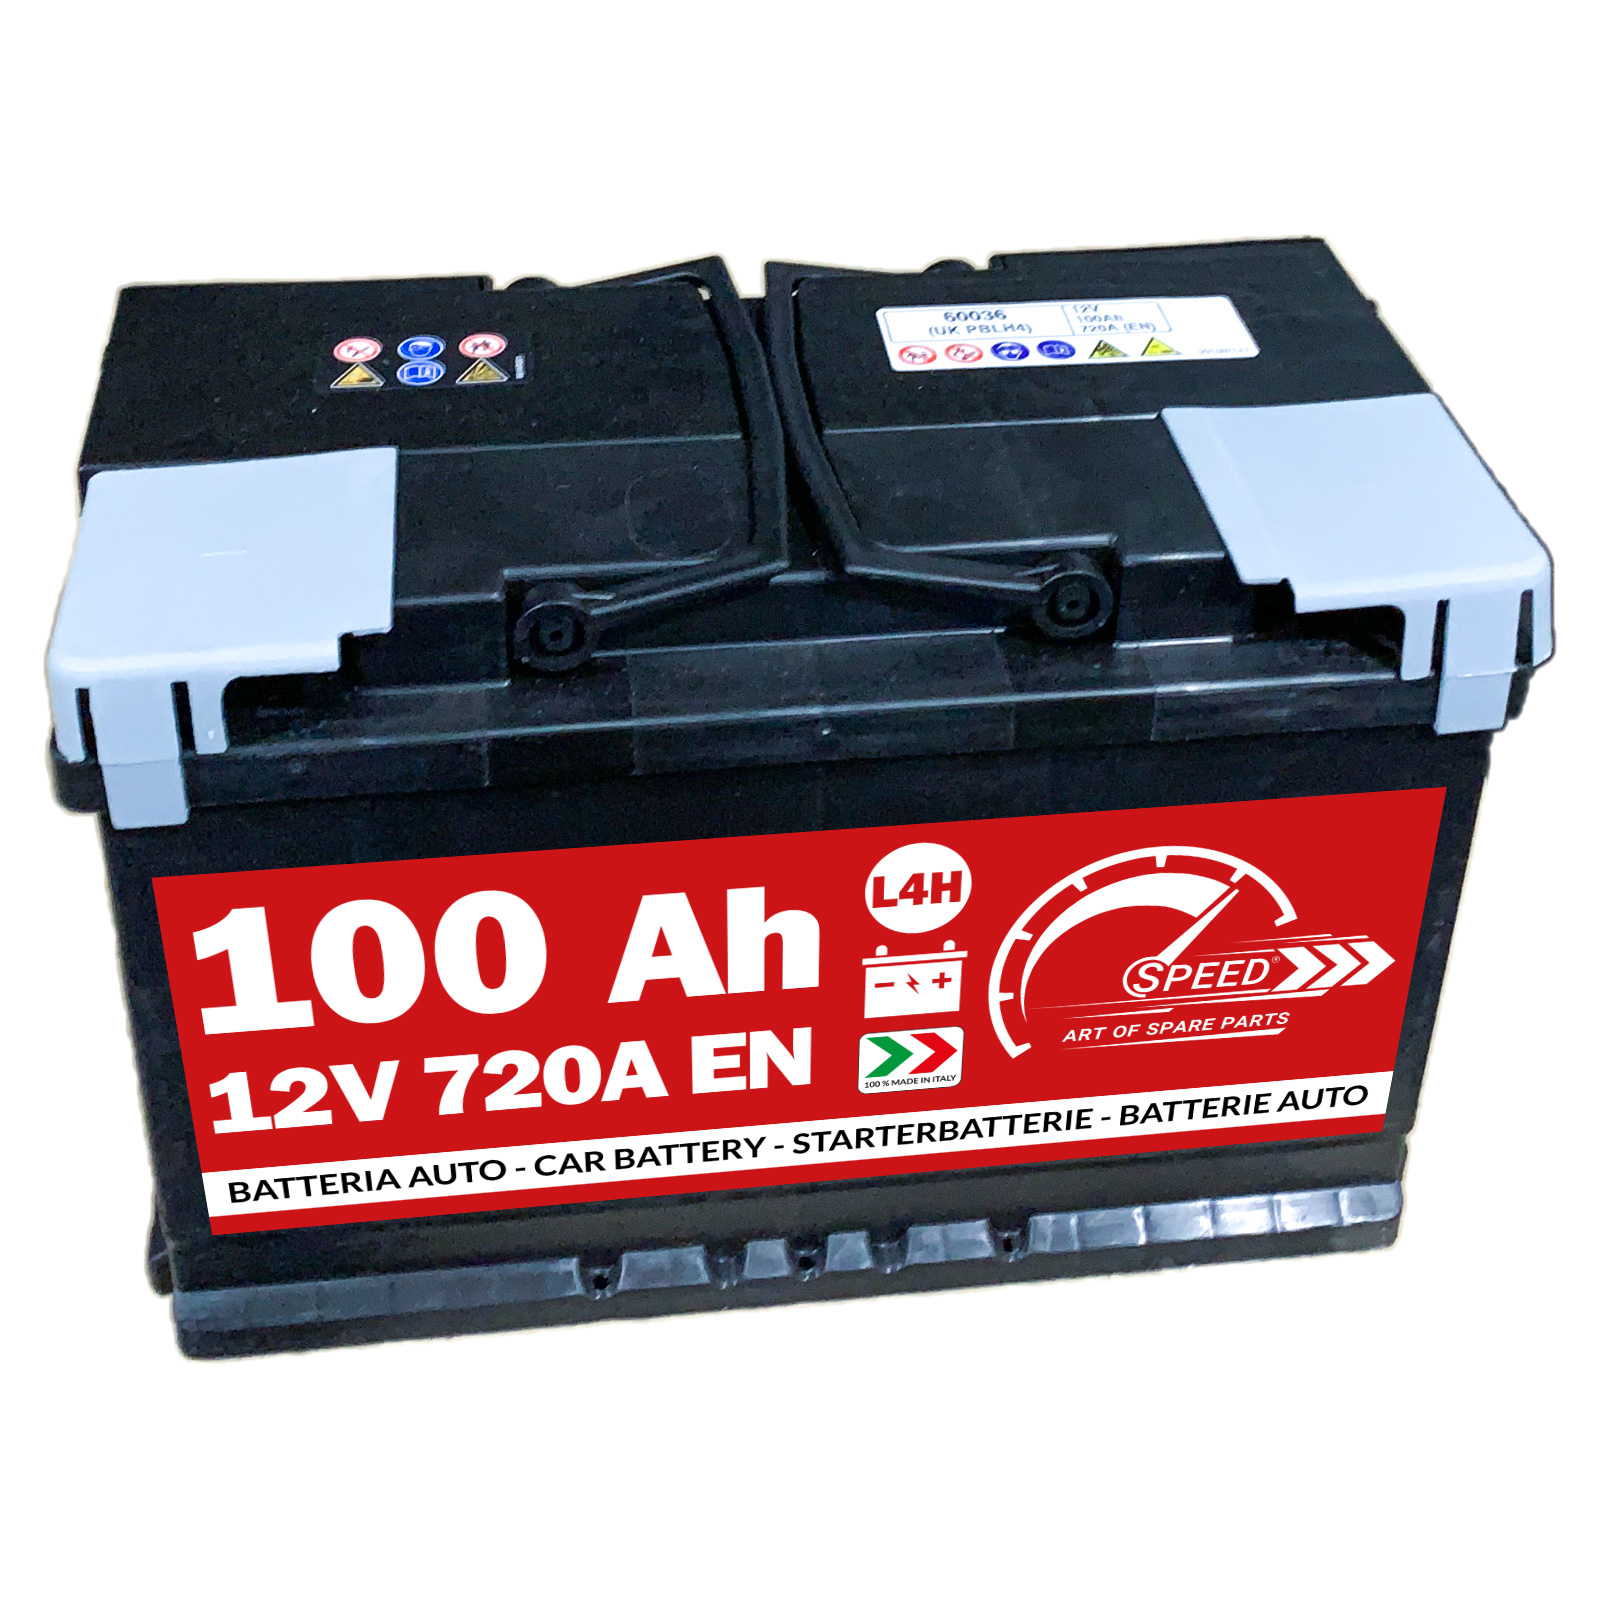 Batteria auto 100AH - Ricambi auto SMC